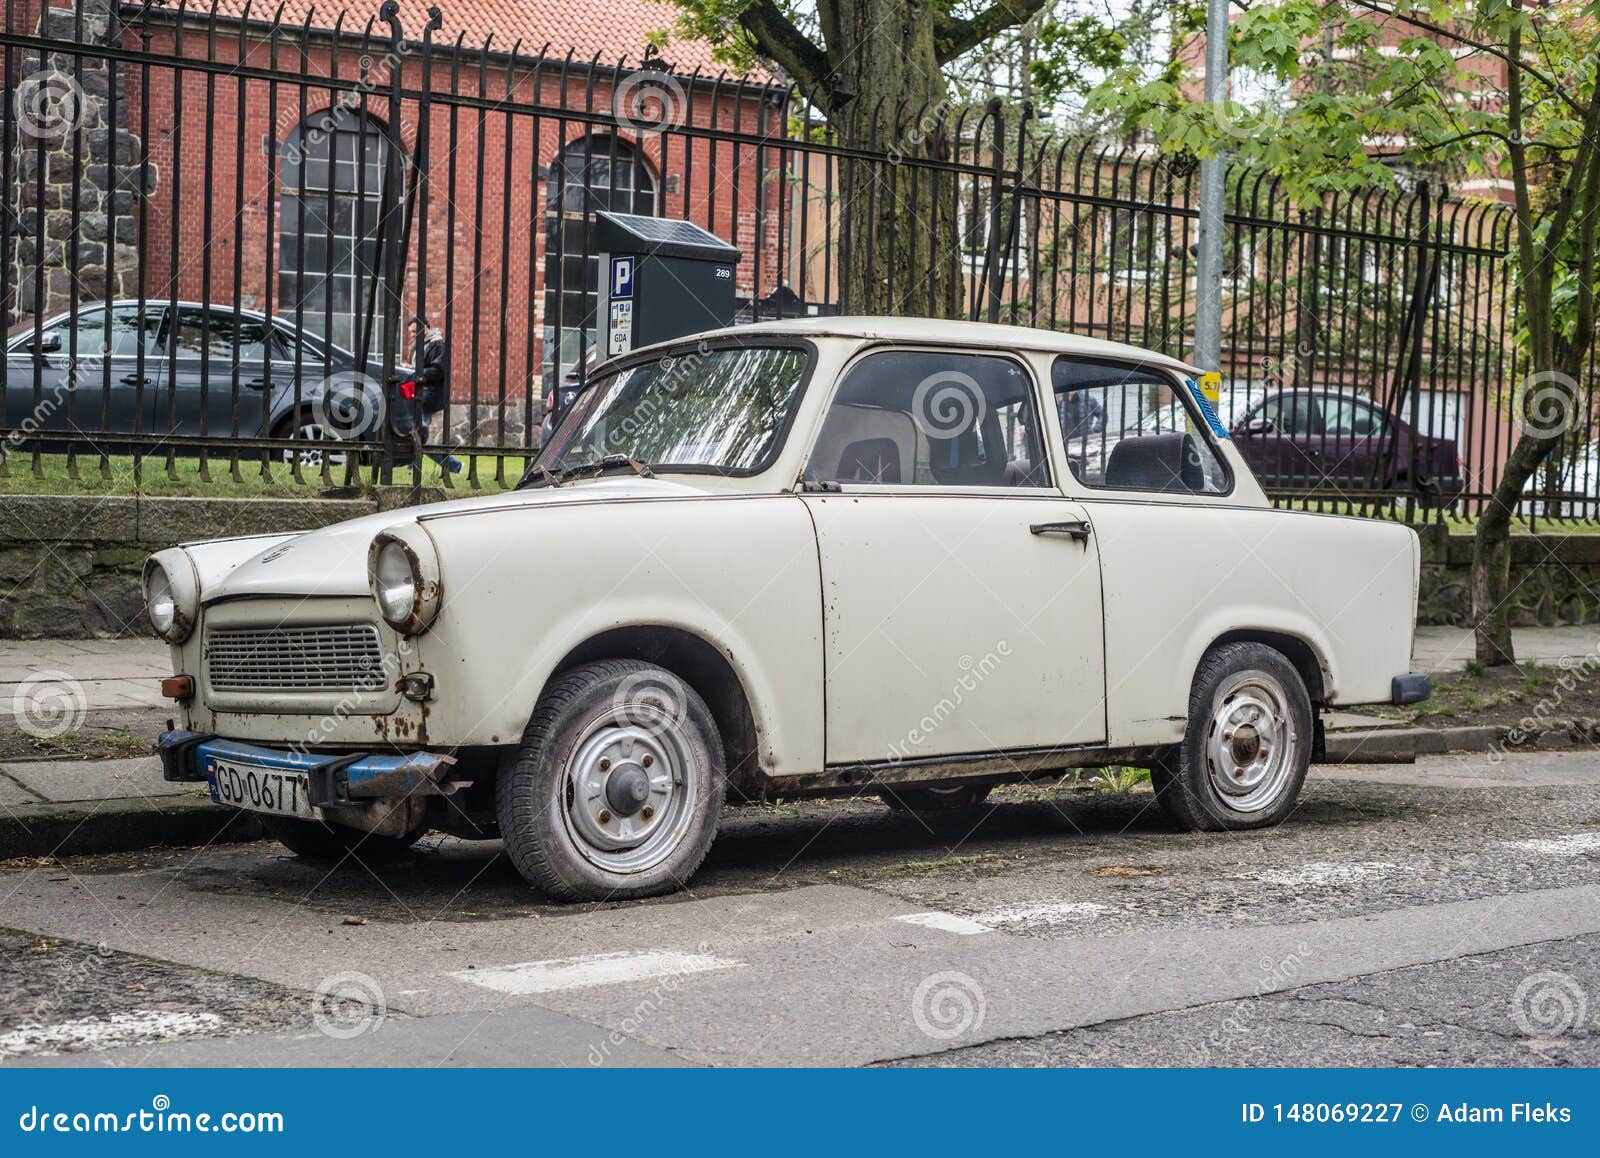 Oude Duitse Communistische Plastic Auto Trabant 601 Redactionele Fotografie - of ebbehout, goedkoop: 148069227